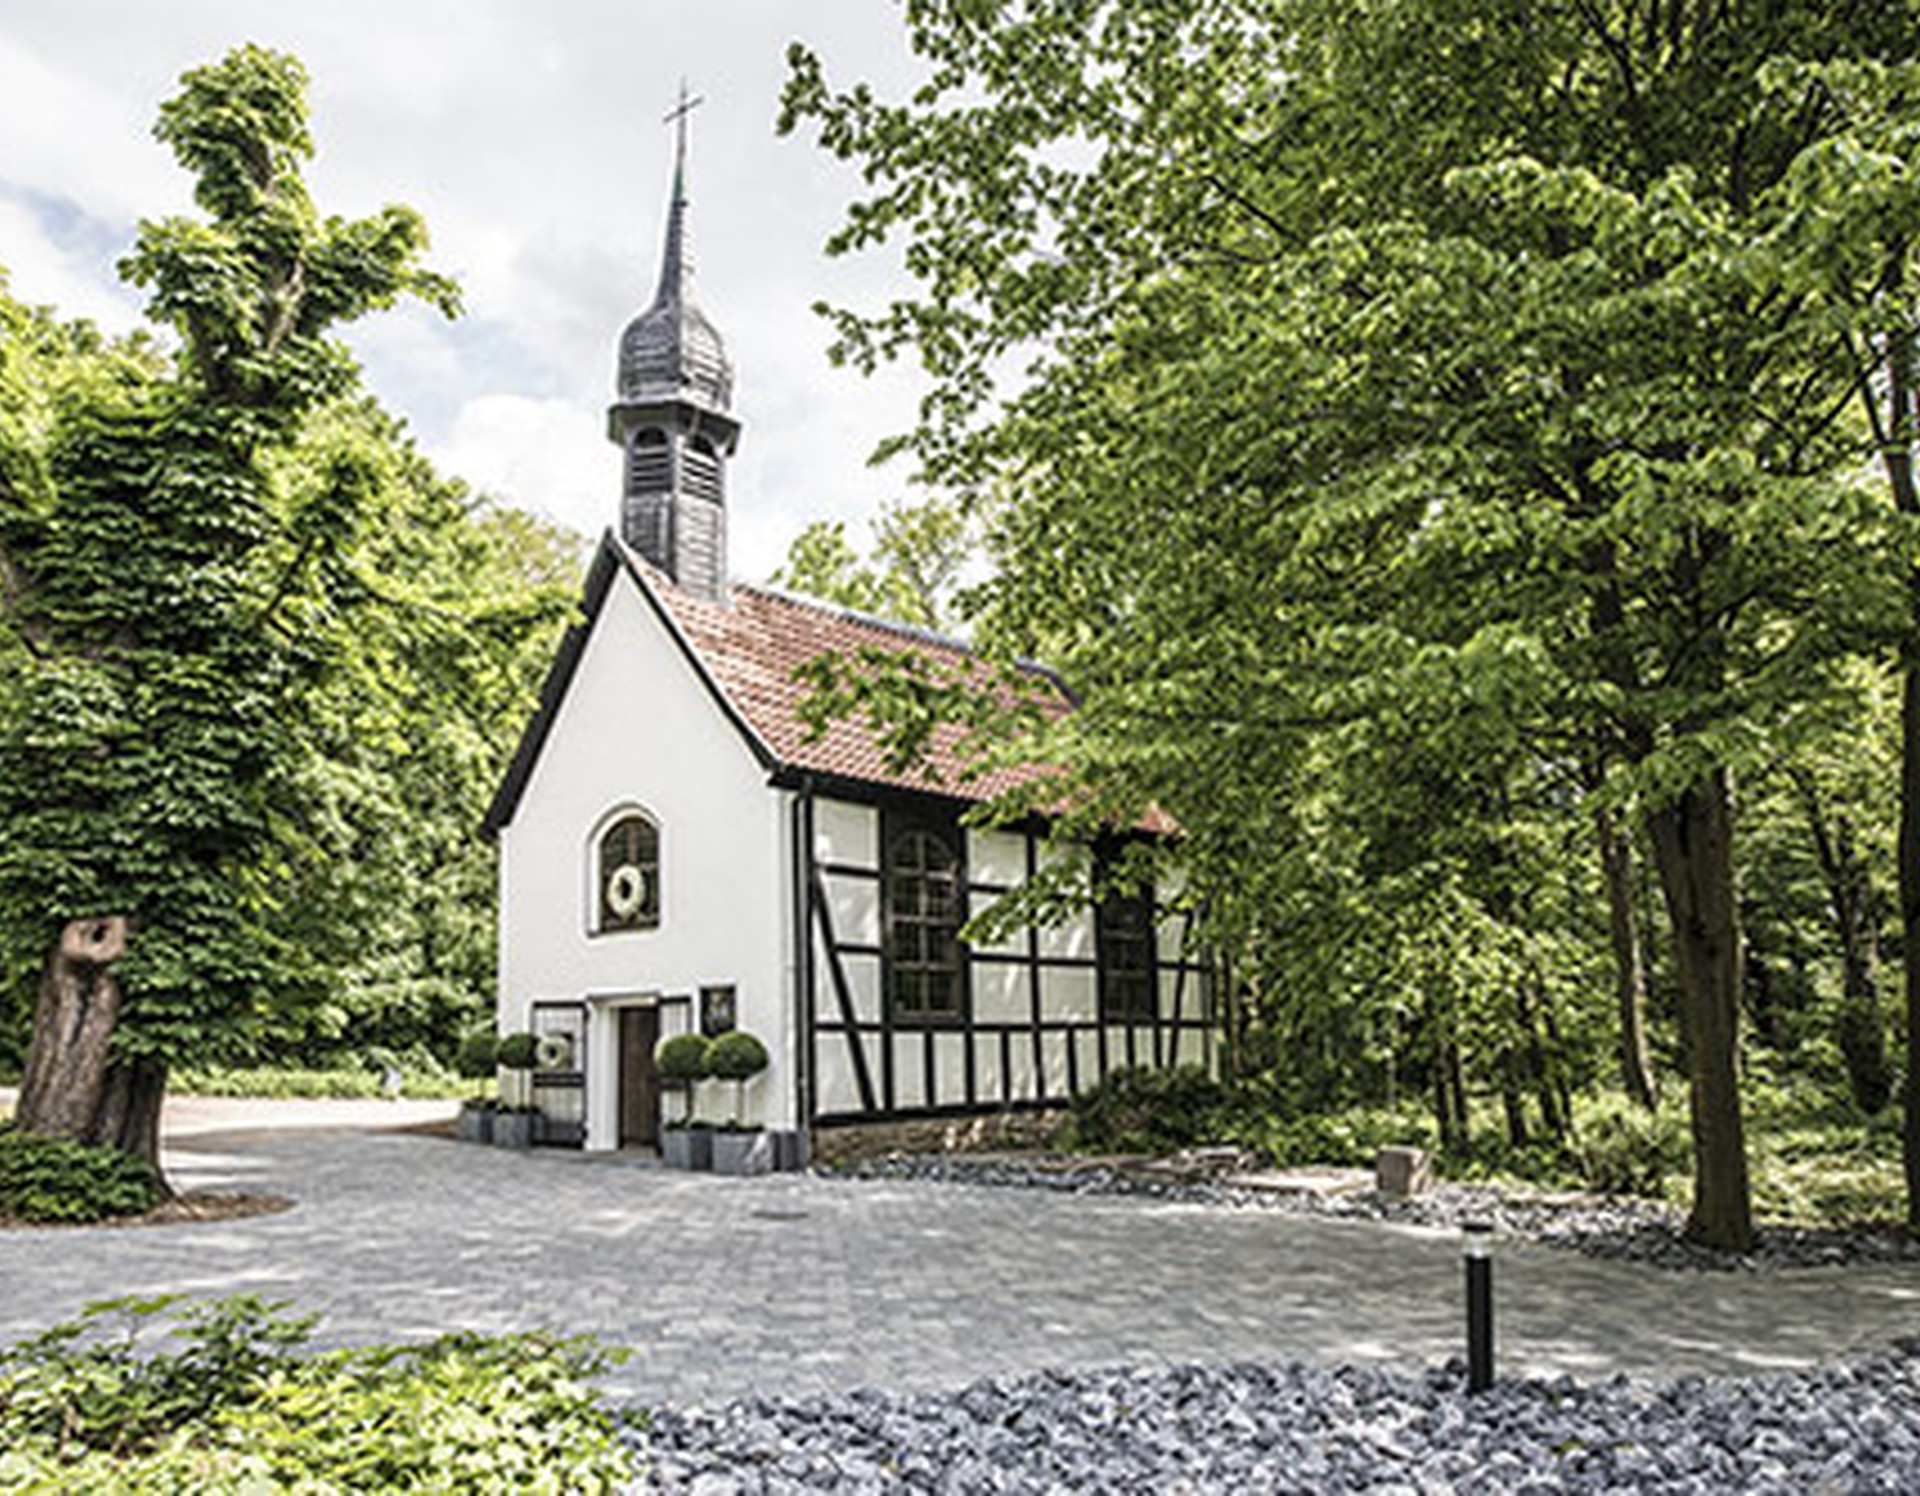 Die 1783 errichtete Kapelle Wischlingen, bei der es sich um einen sakralen Fachwerkbau handelt.